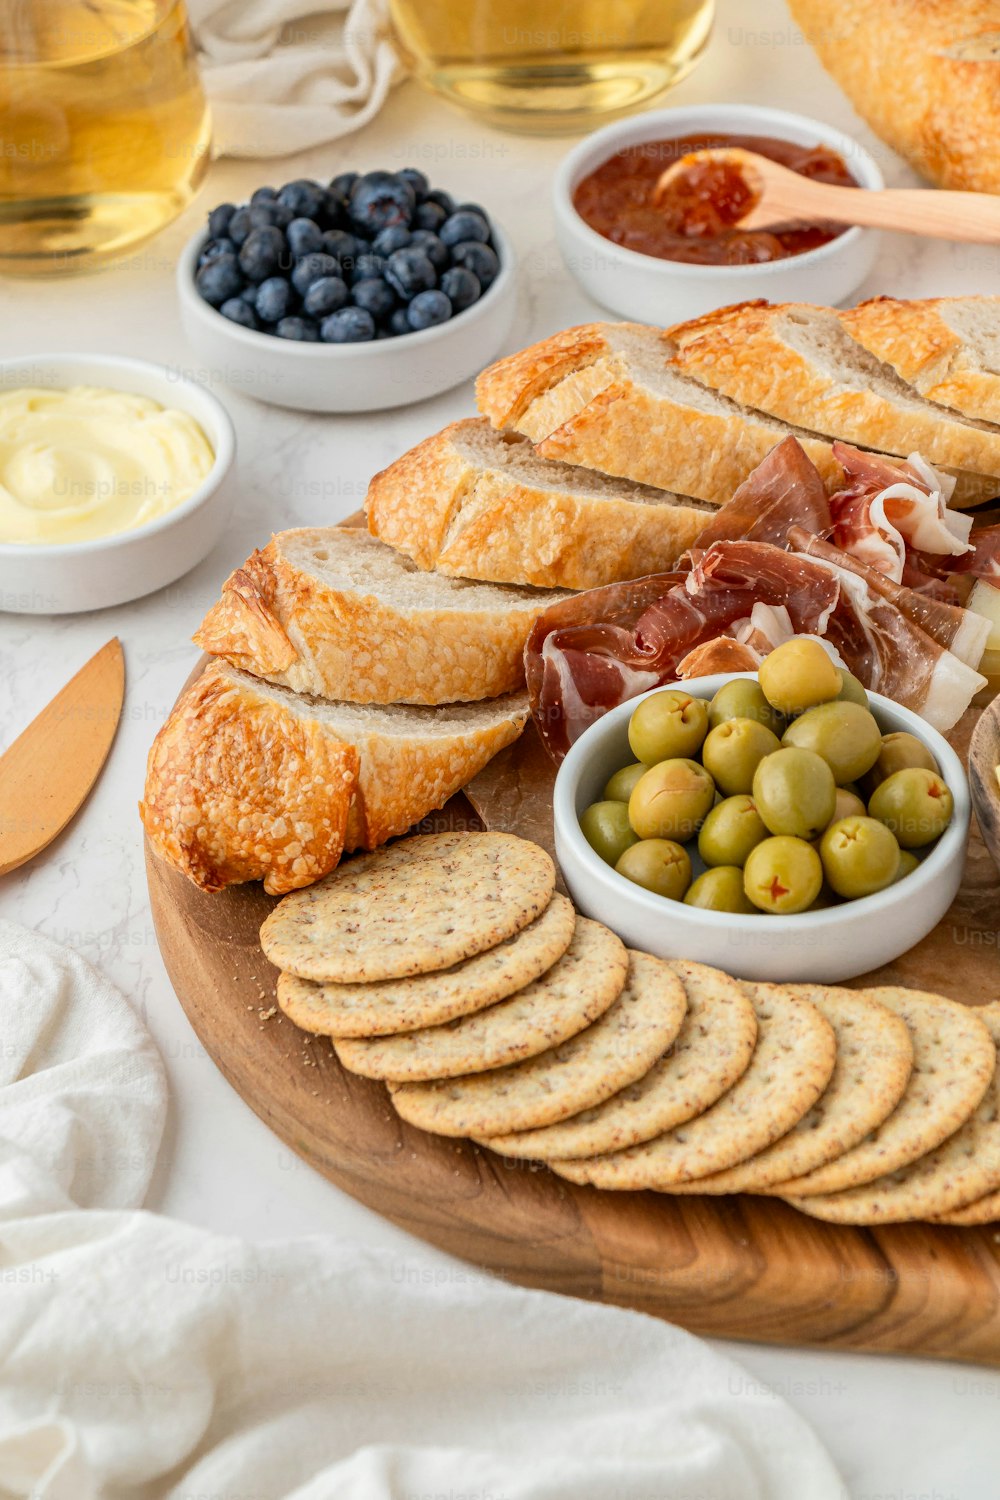 un plateau de pain, d’olives, de tranches de pain, de fromage et de pain